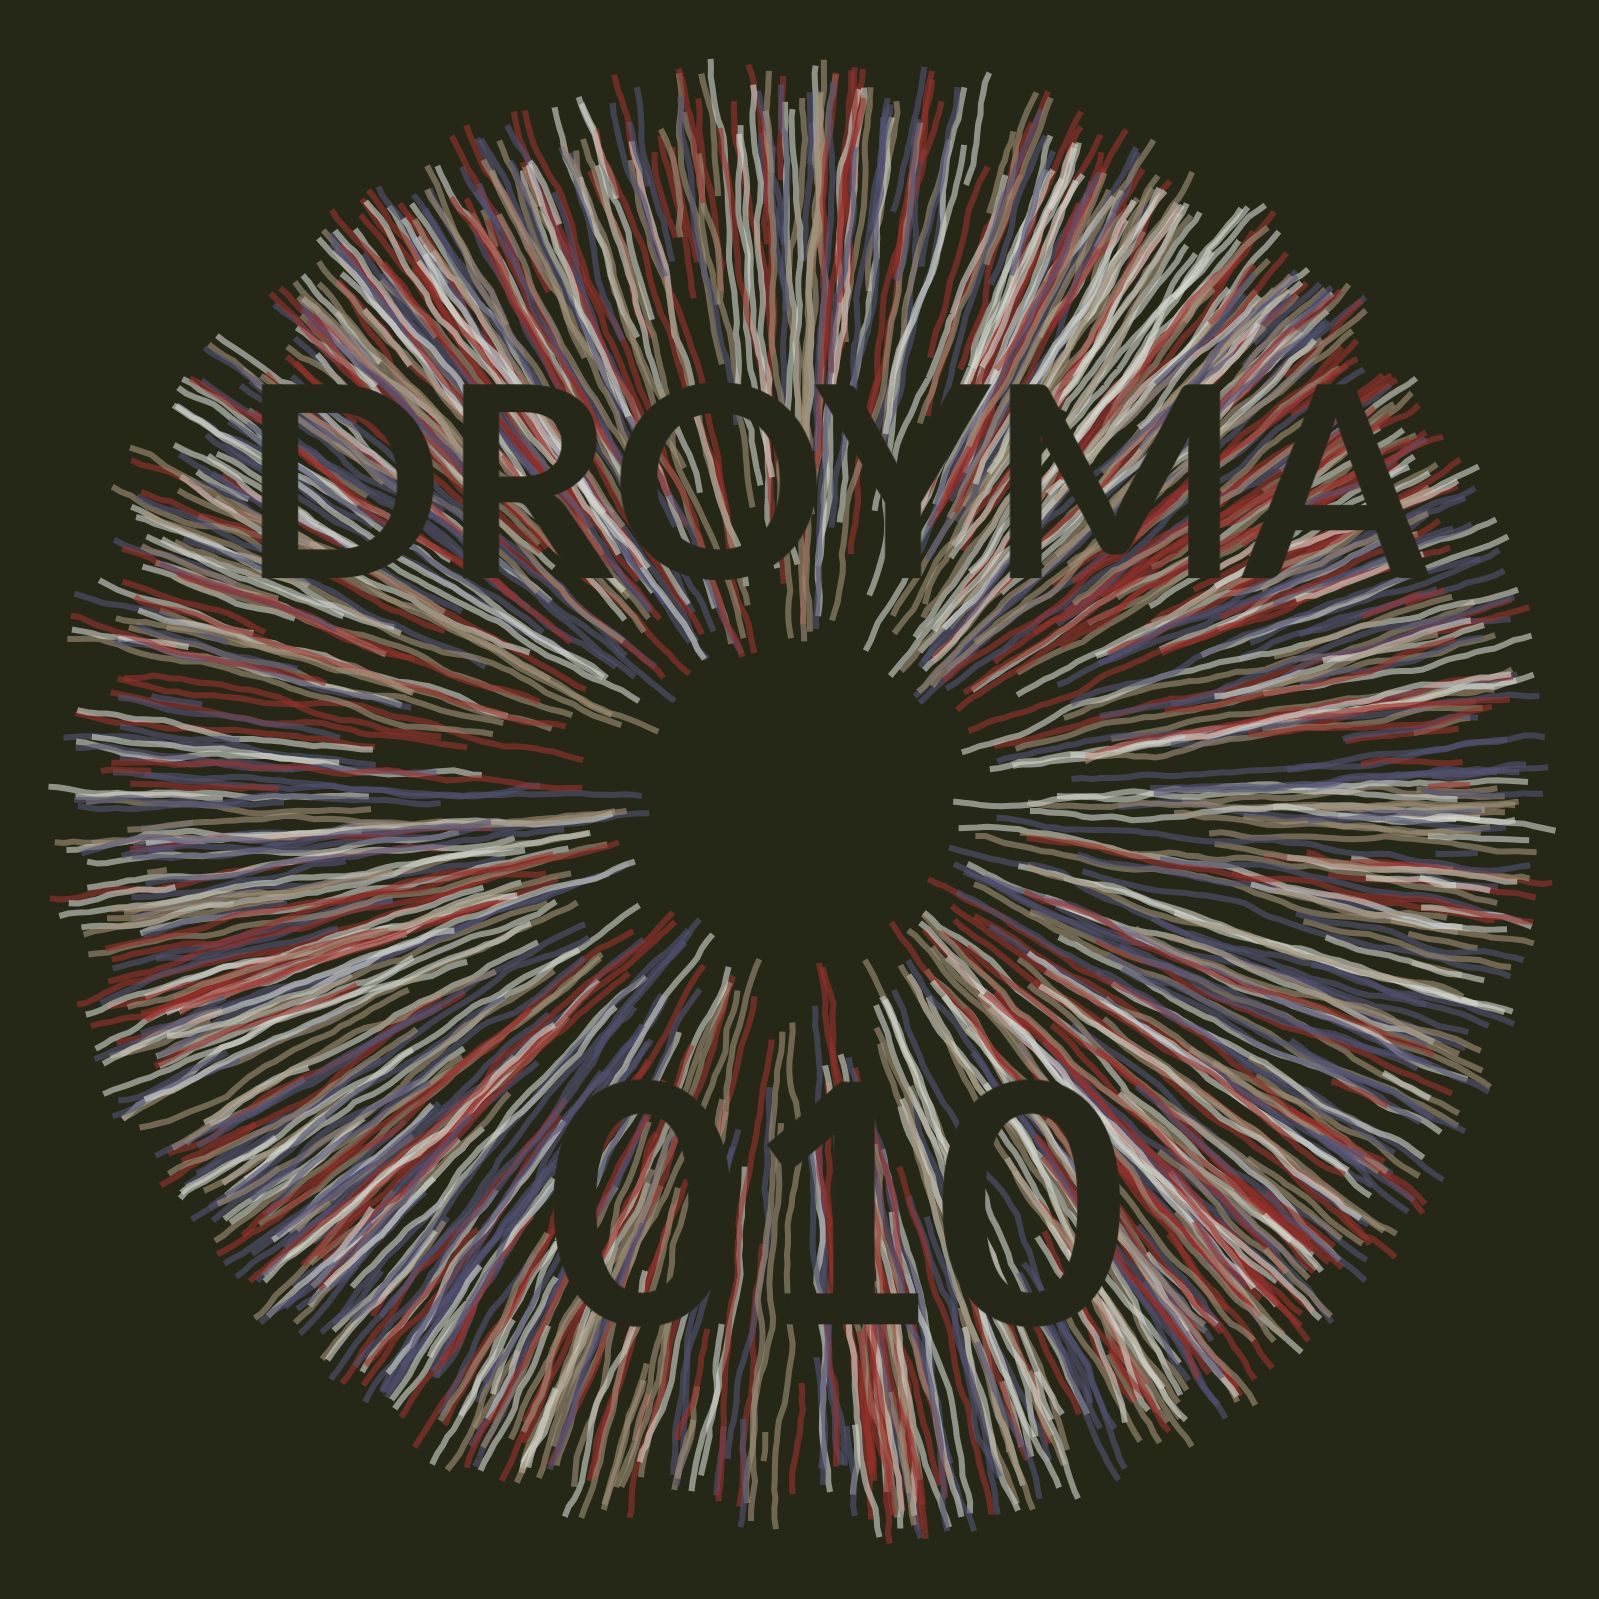 ჩამოტვირთვა Droyma Mix 010 - April 2019